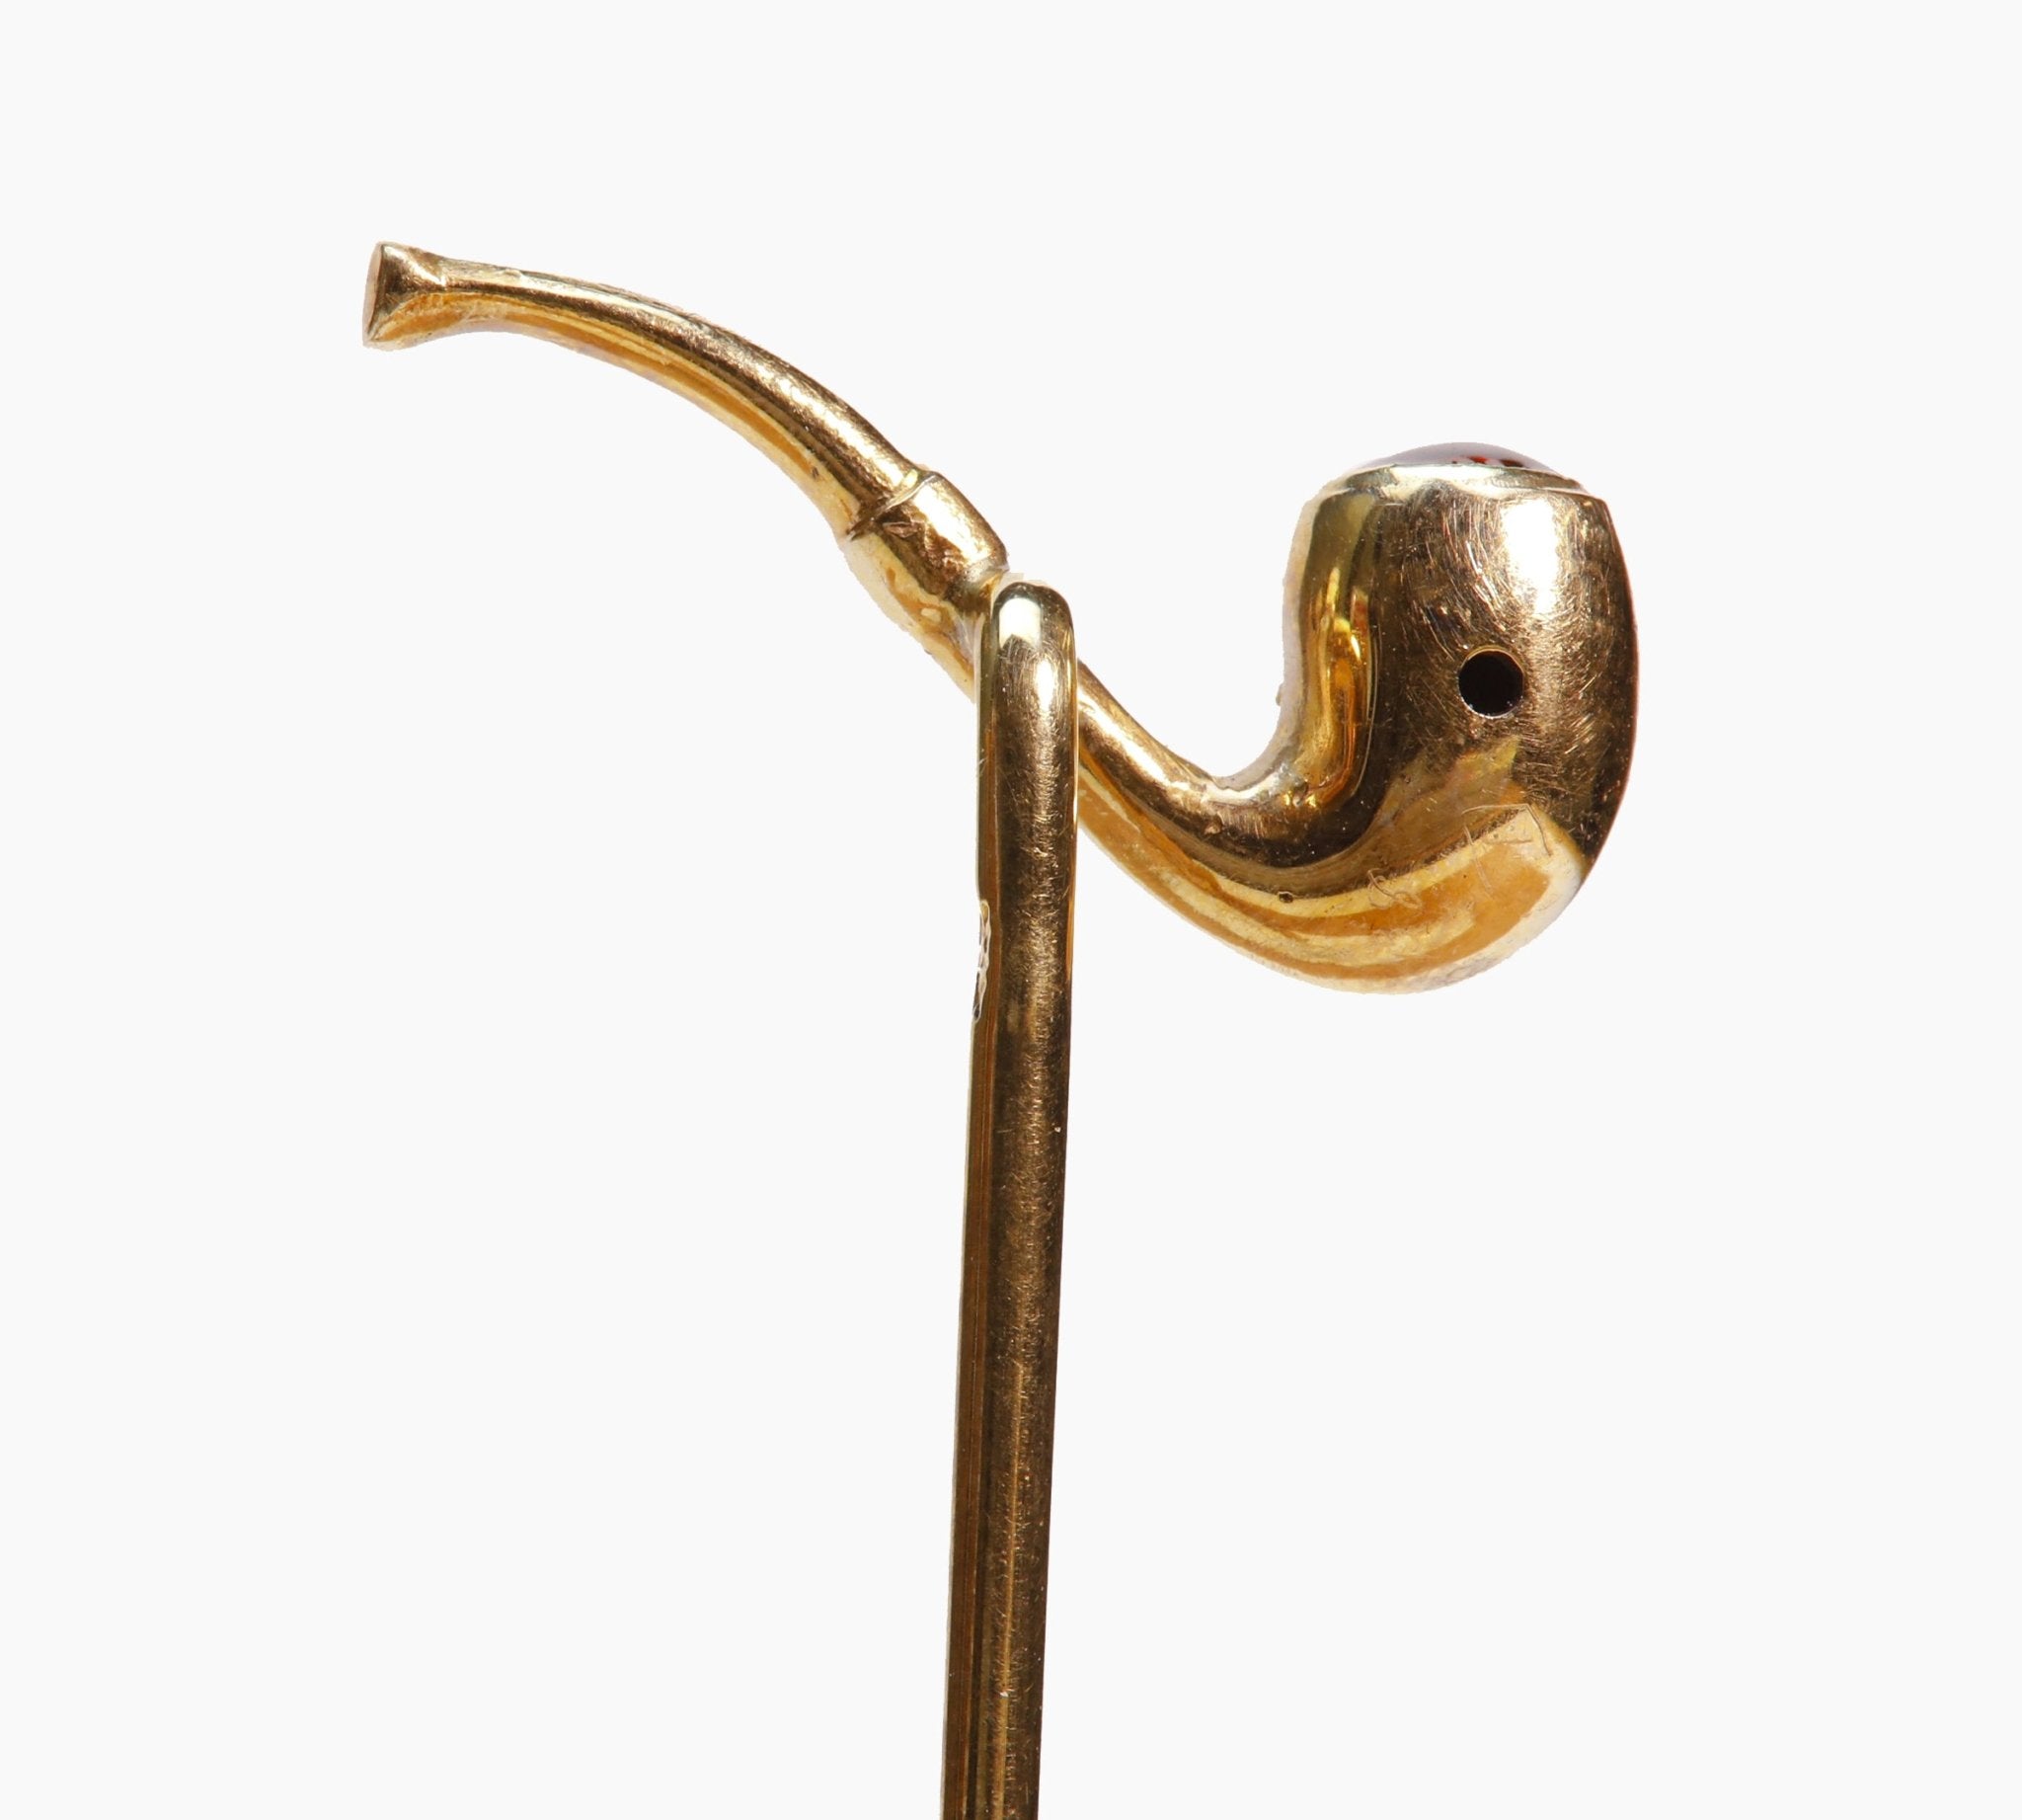 Antique Gold Pearl Enamel Smoking Pipe Stick Pin